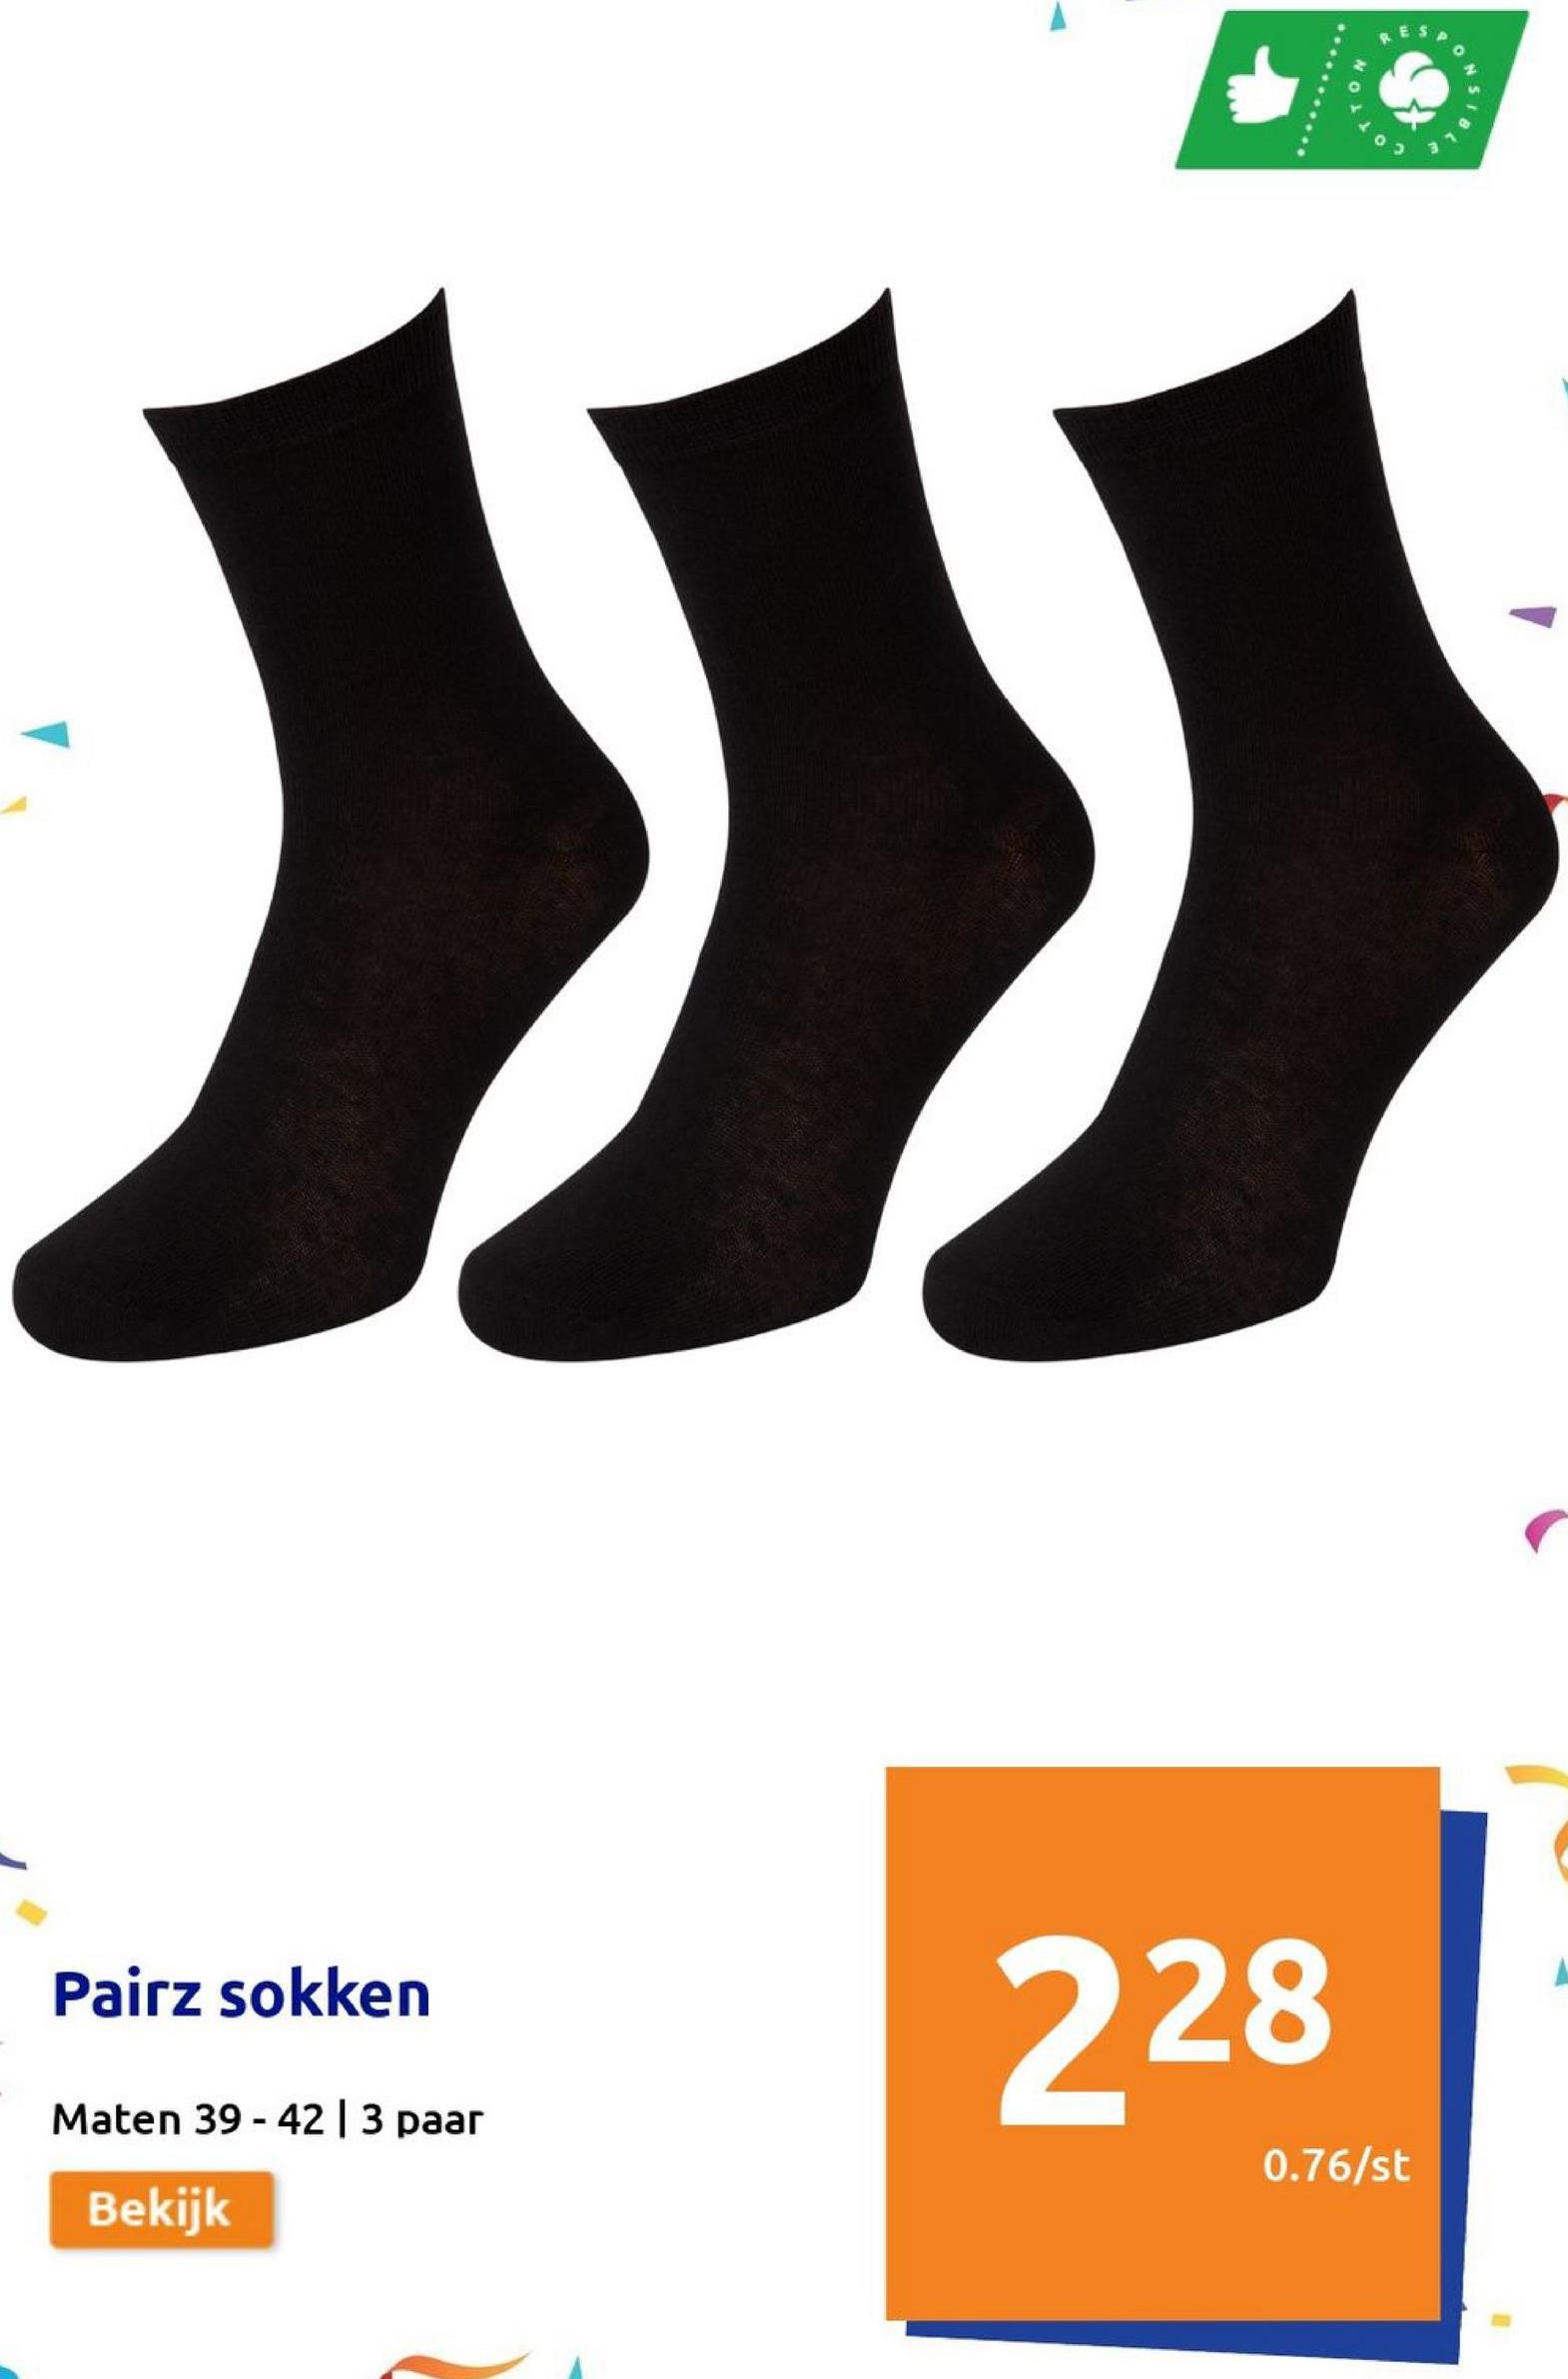 Pairz sokken
Maten 39-42 | 3 paar
Bekijk
228
0.76/st